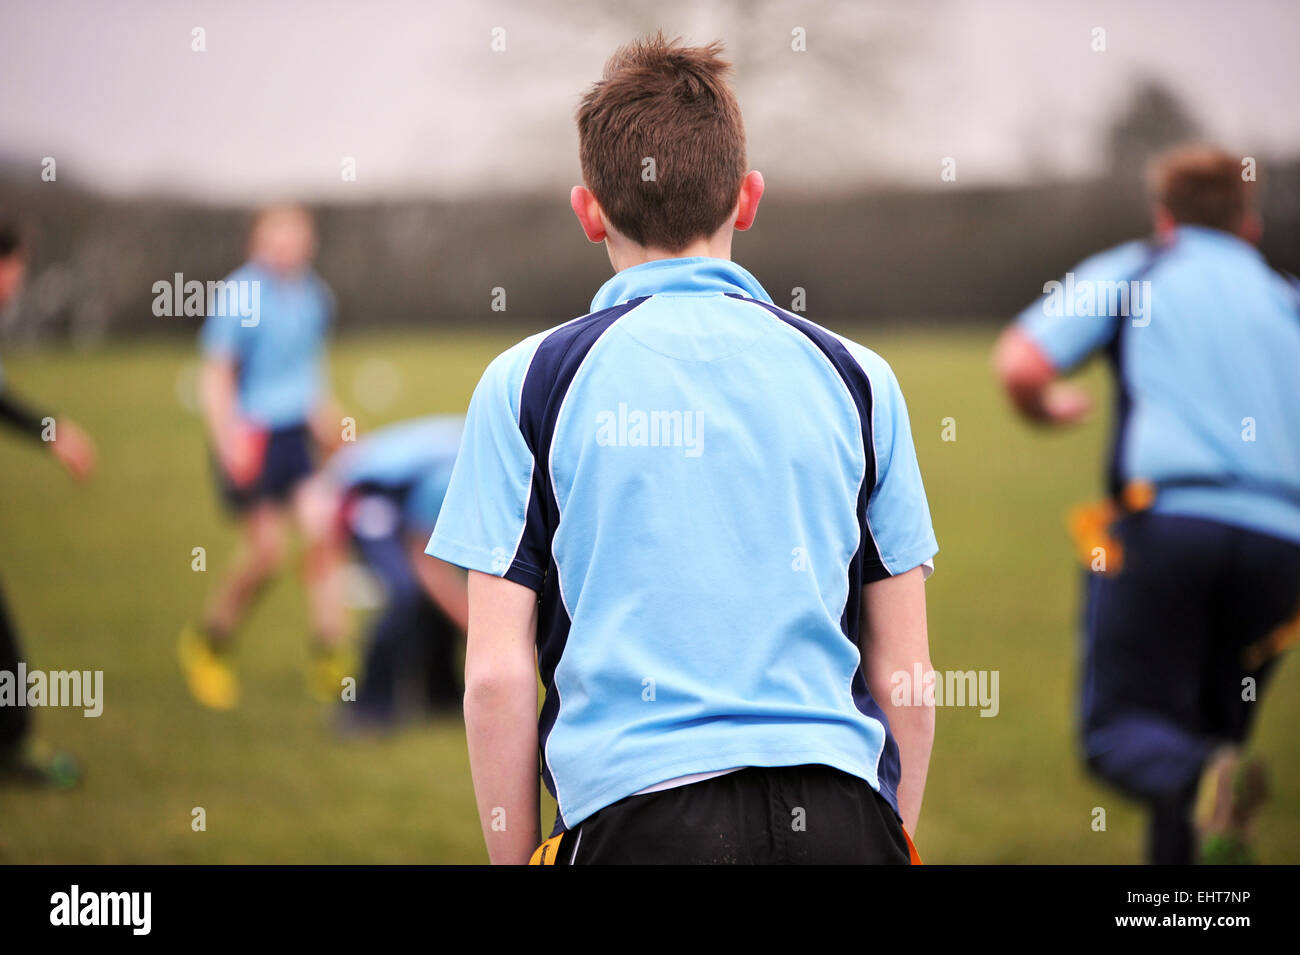 Junge schaut ein Rugby-Spiel von der Seitenlinie, Blick von der Rückseite. Stockfoto